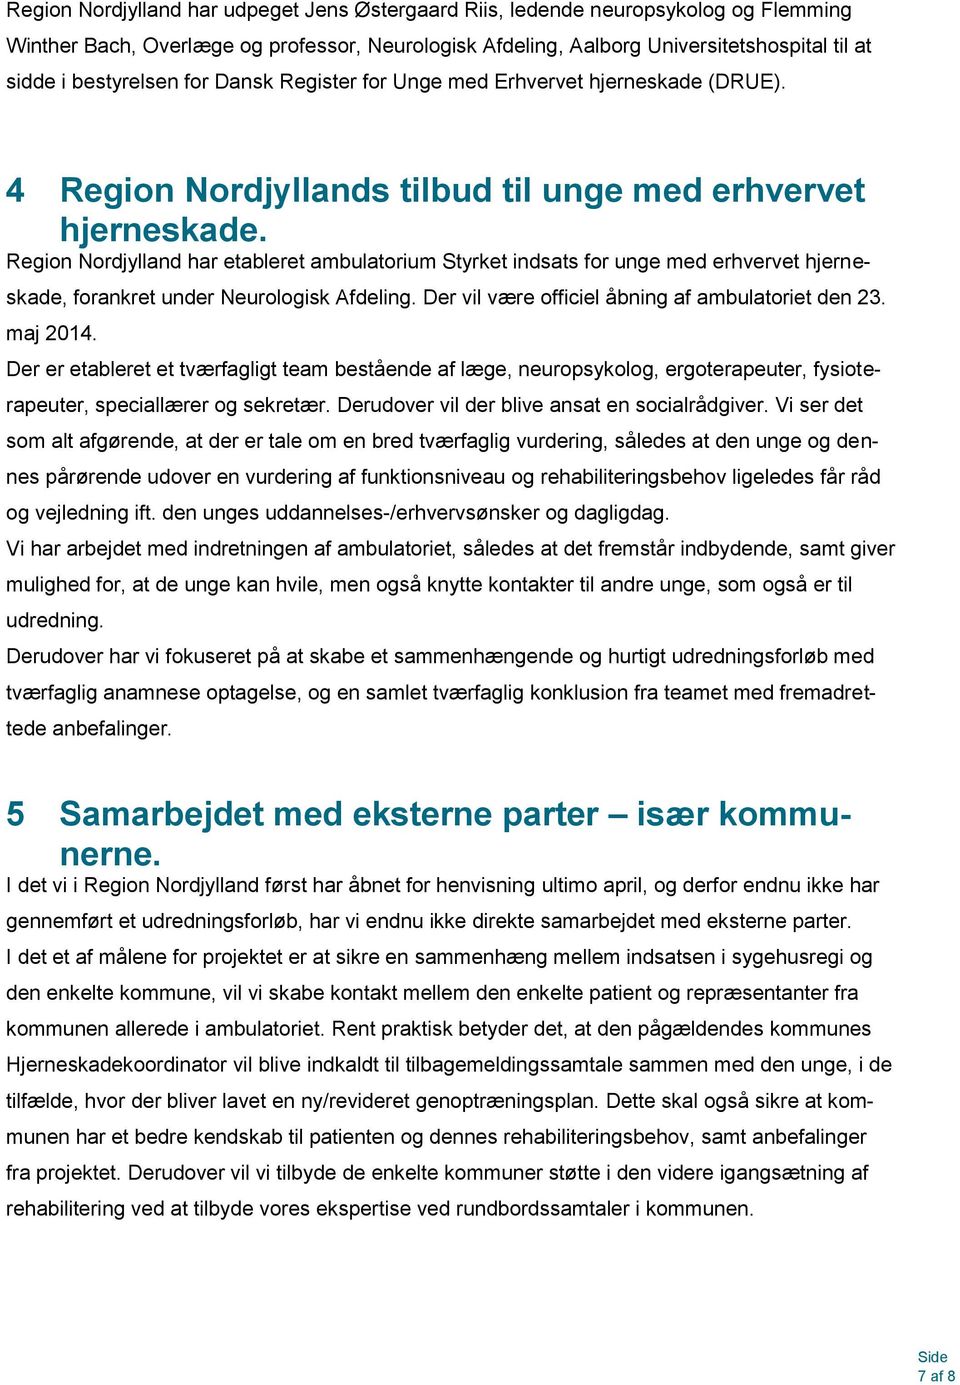 Region Nordjylland har etableret ambulatorium Styrket indsats for unge med erhvervet hjerneskade, forankret under Neurologisk Afdeling. Der vil være officiel åbning af ambulatoriet den 23. maj 2014.